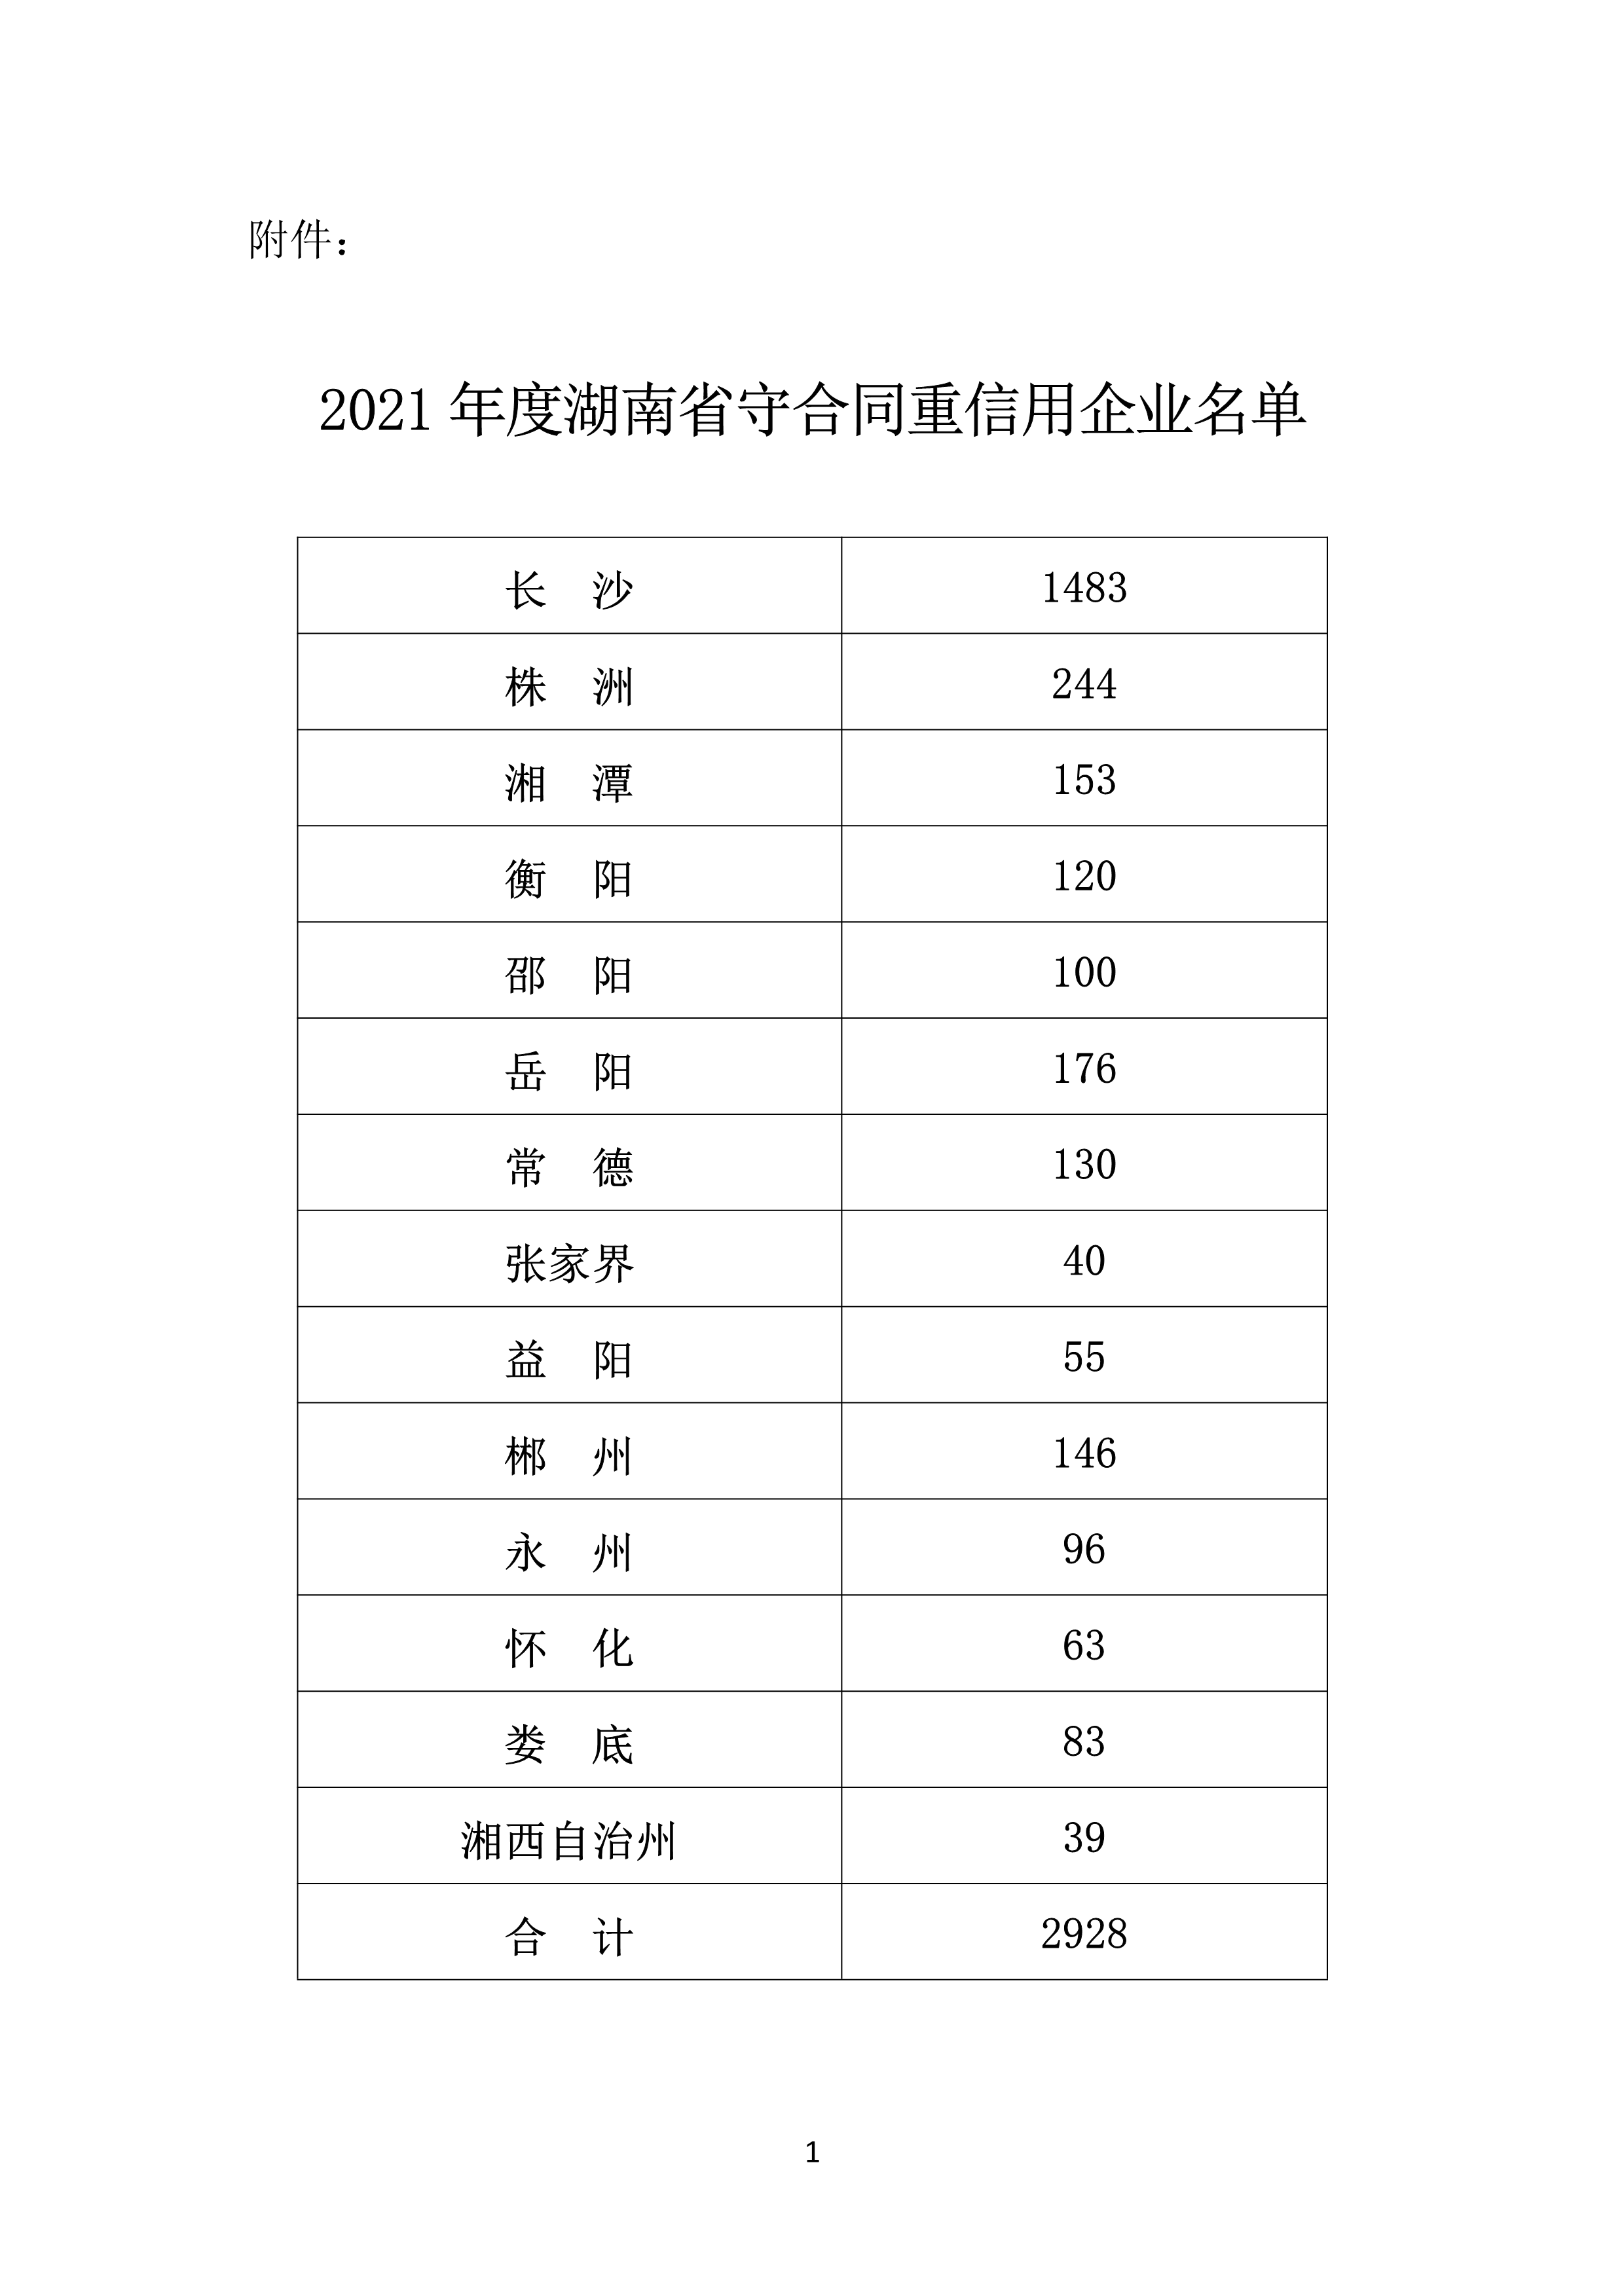 2021 年(nián)度湖南省守合同重信用企業名單_2.png